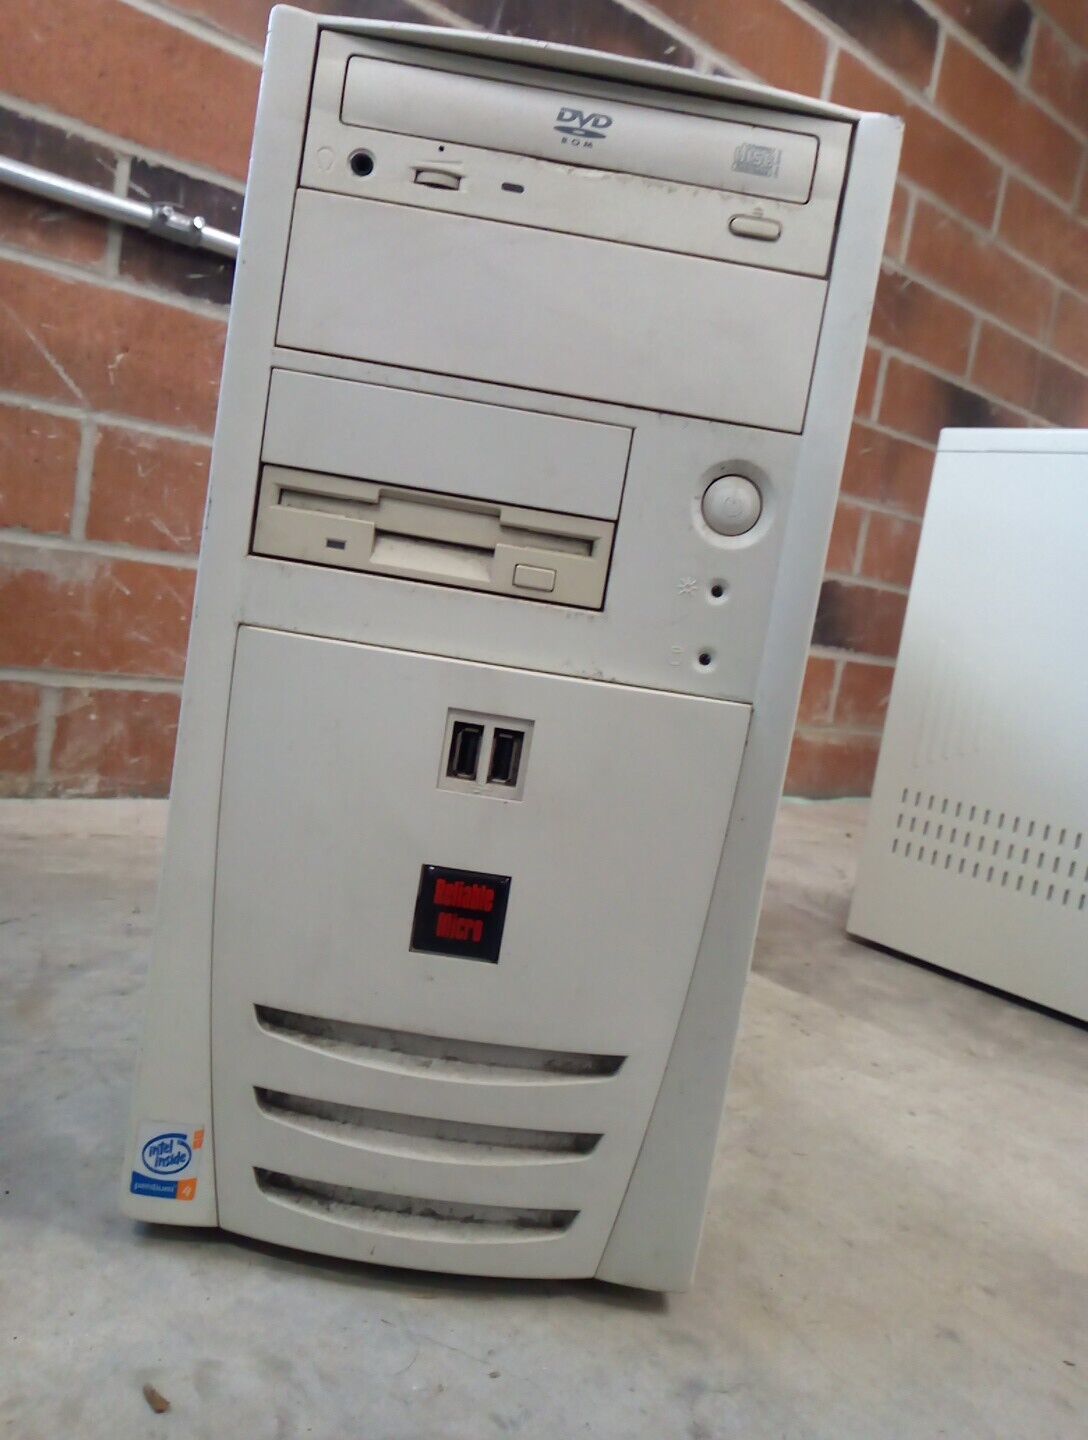 Vintage Retro PC • Pentium